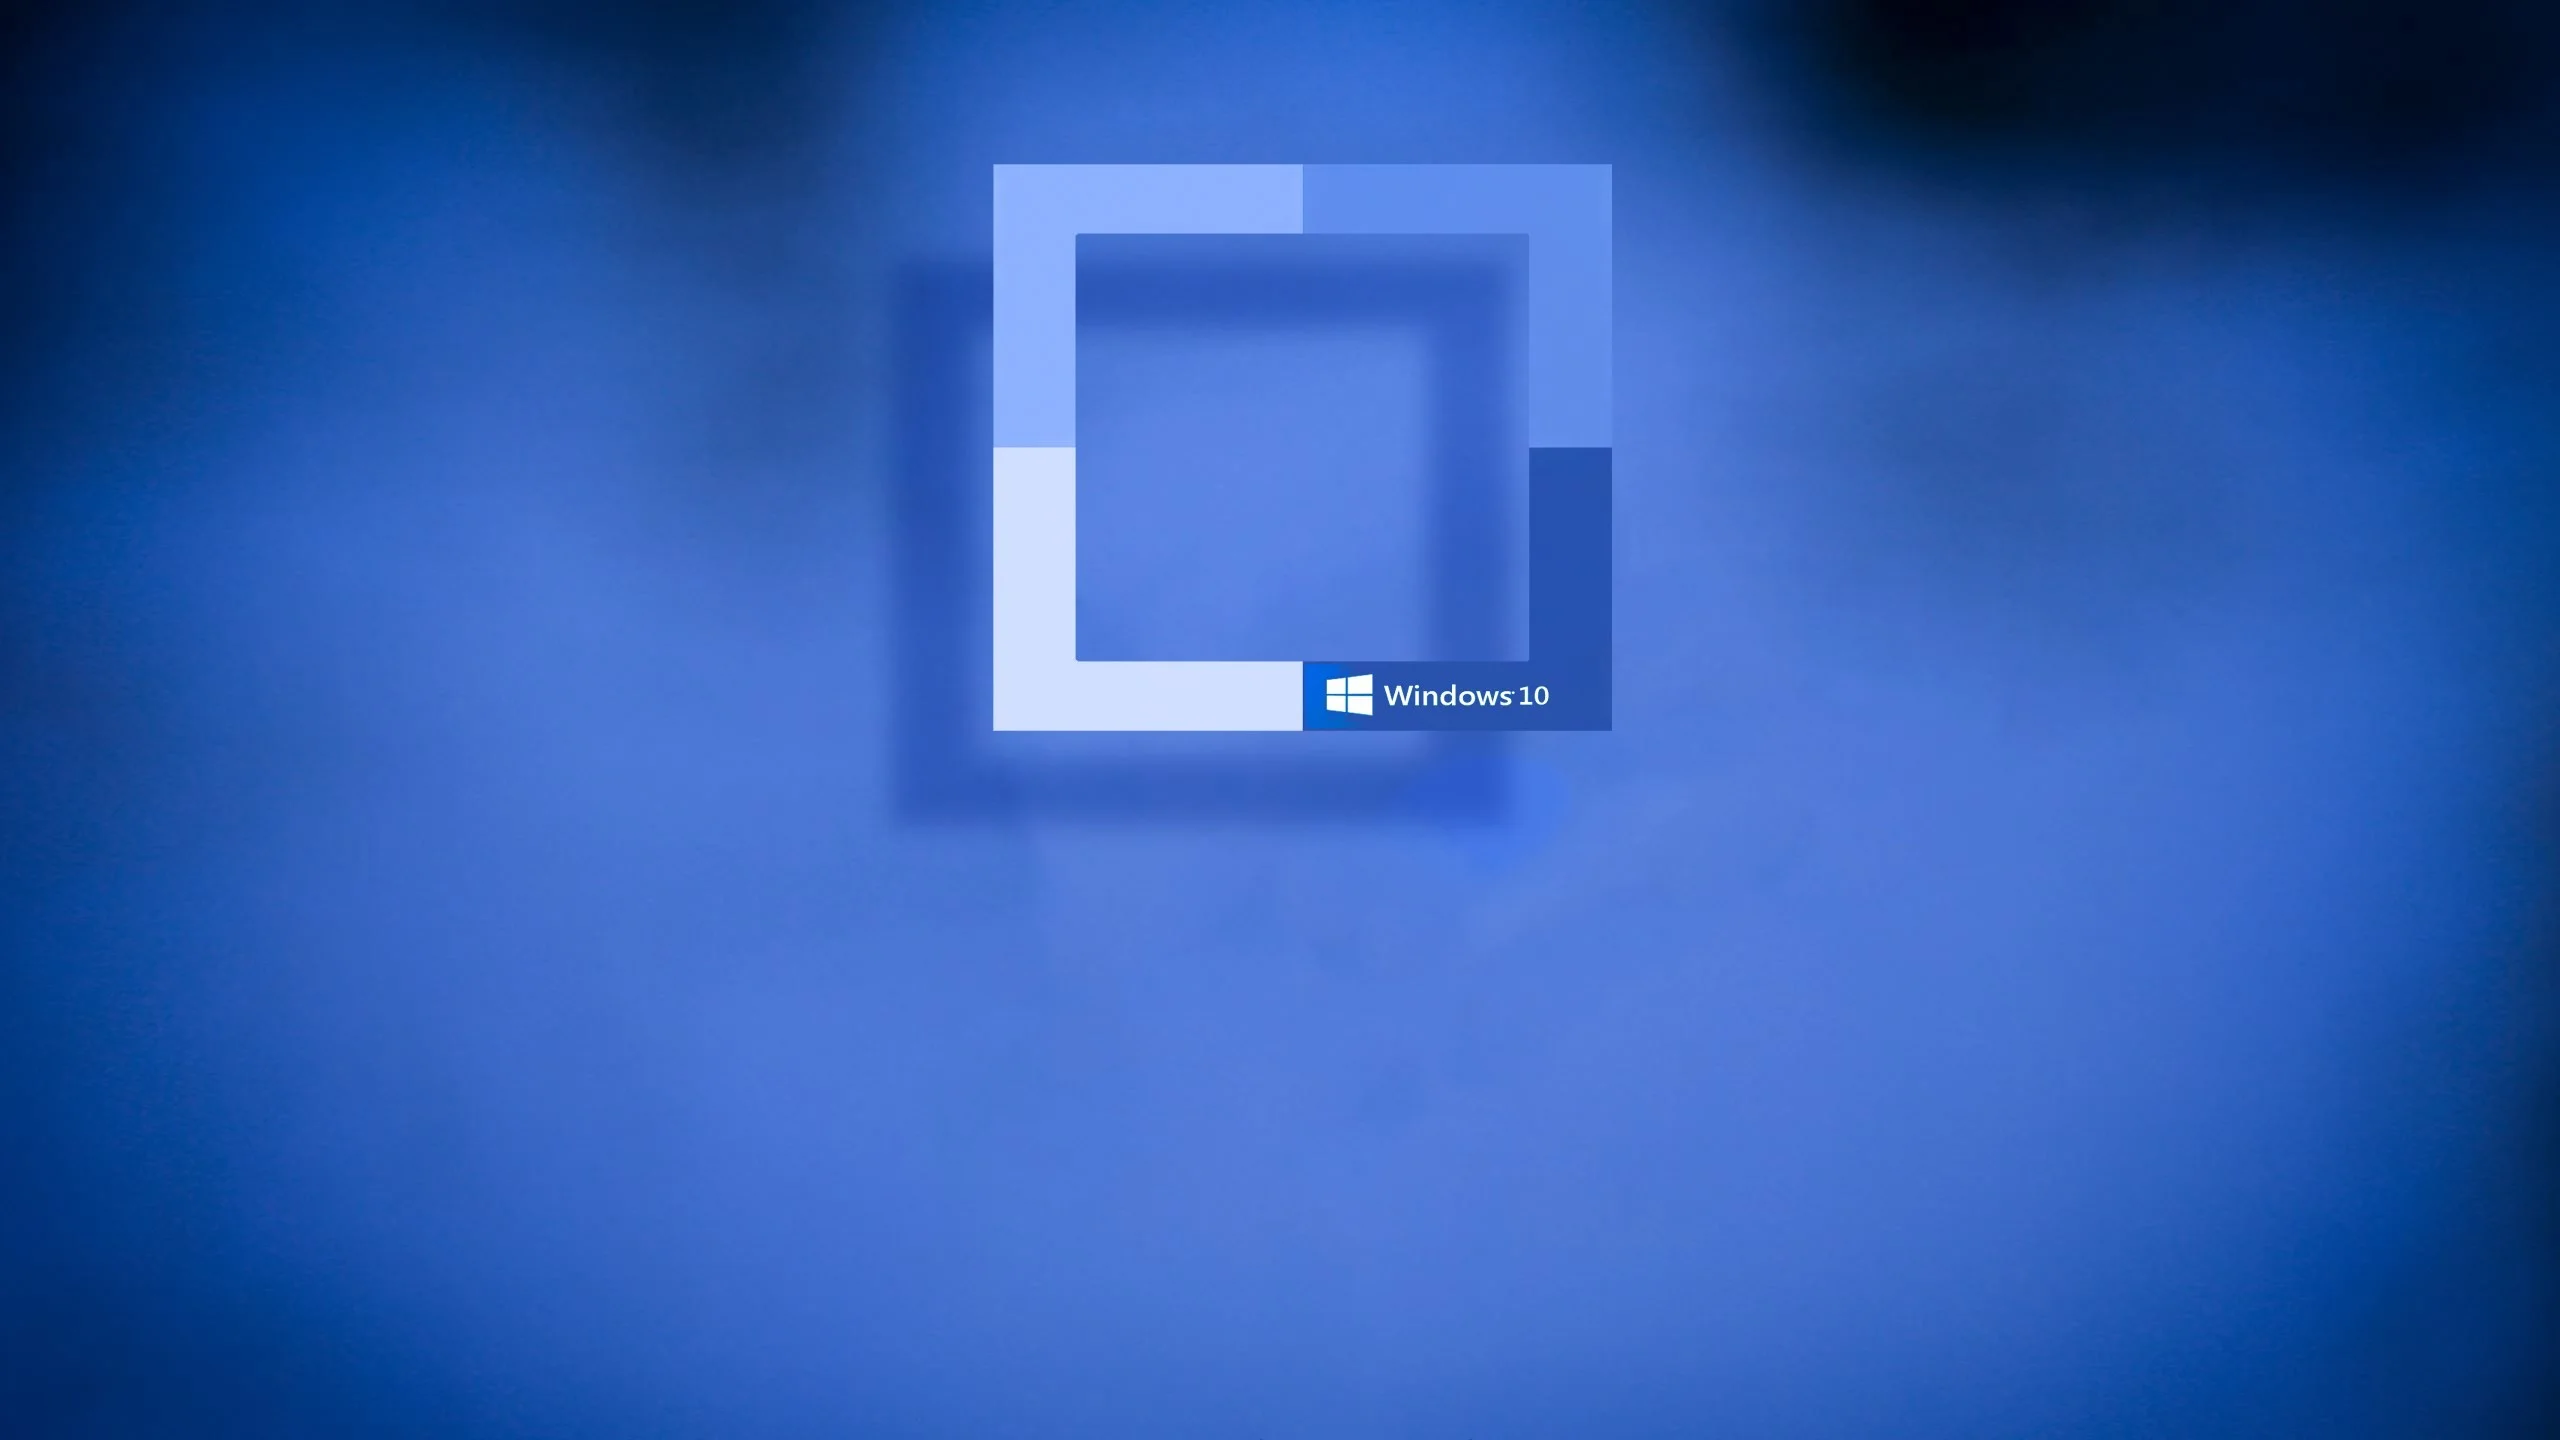 Màn hình nền Windows 10 (Windows 10 desktop backgrounds): Dành cho những người yêu thích sự đổi mới và thay đổi. Hãy xem qua bộ sưu tập hình nền Windows 10 độc đáo nhất, để tùy biến cho riêng mình một cái nhìn mới mẻ.